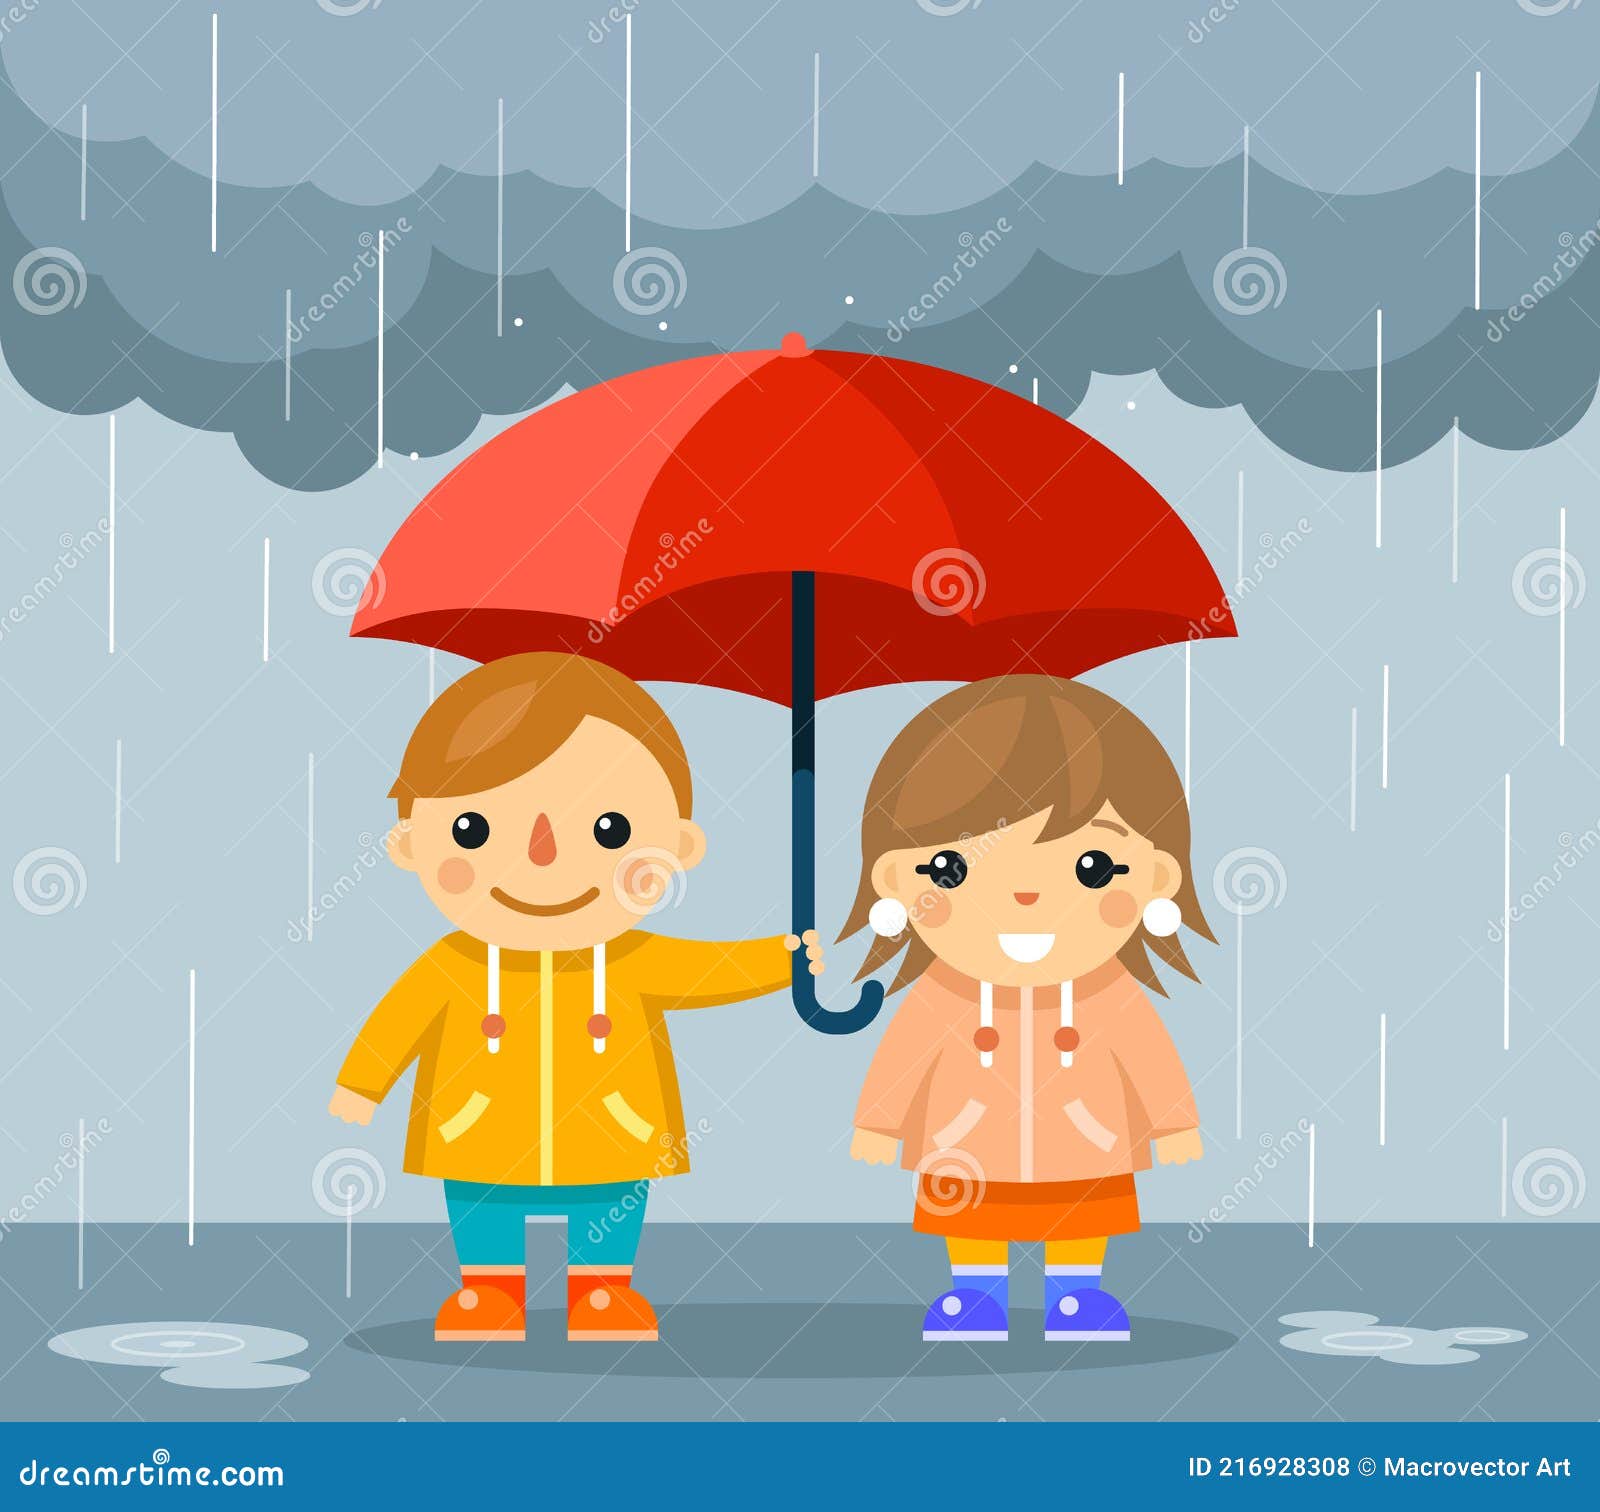 关爱弱势群体雨中给精灵撑伞的小男孩插画图片-千库网